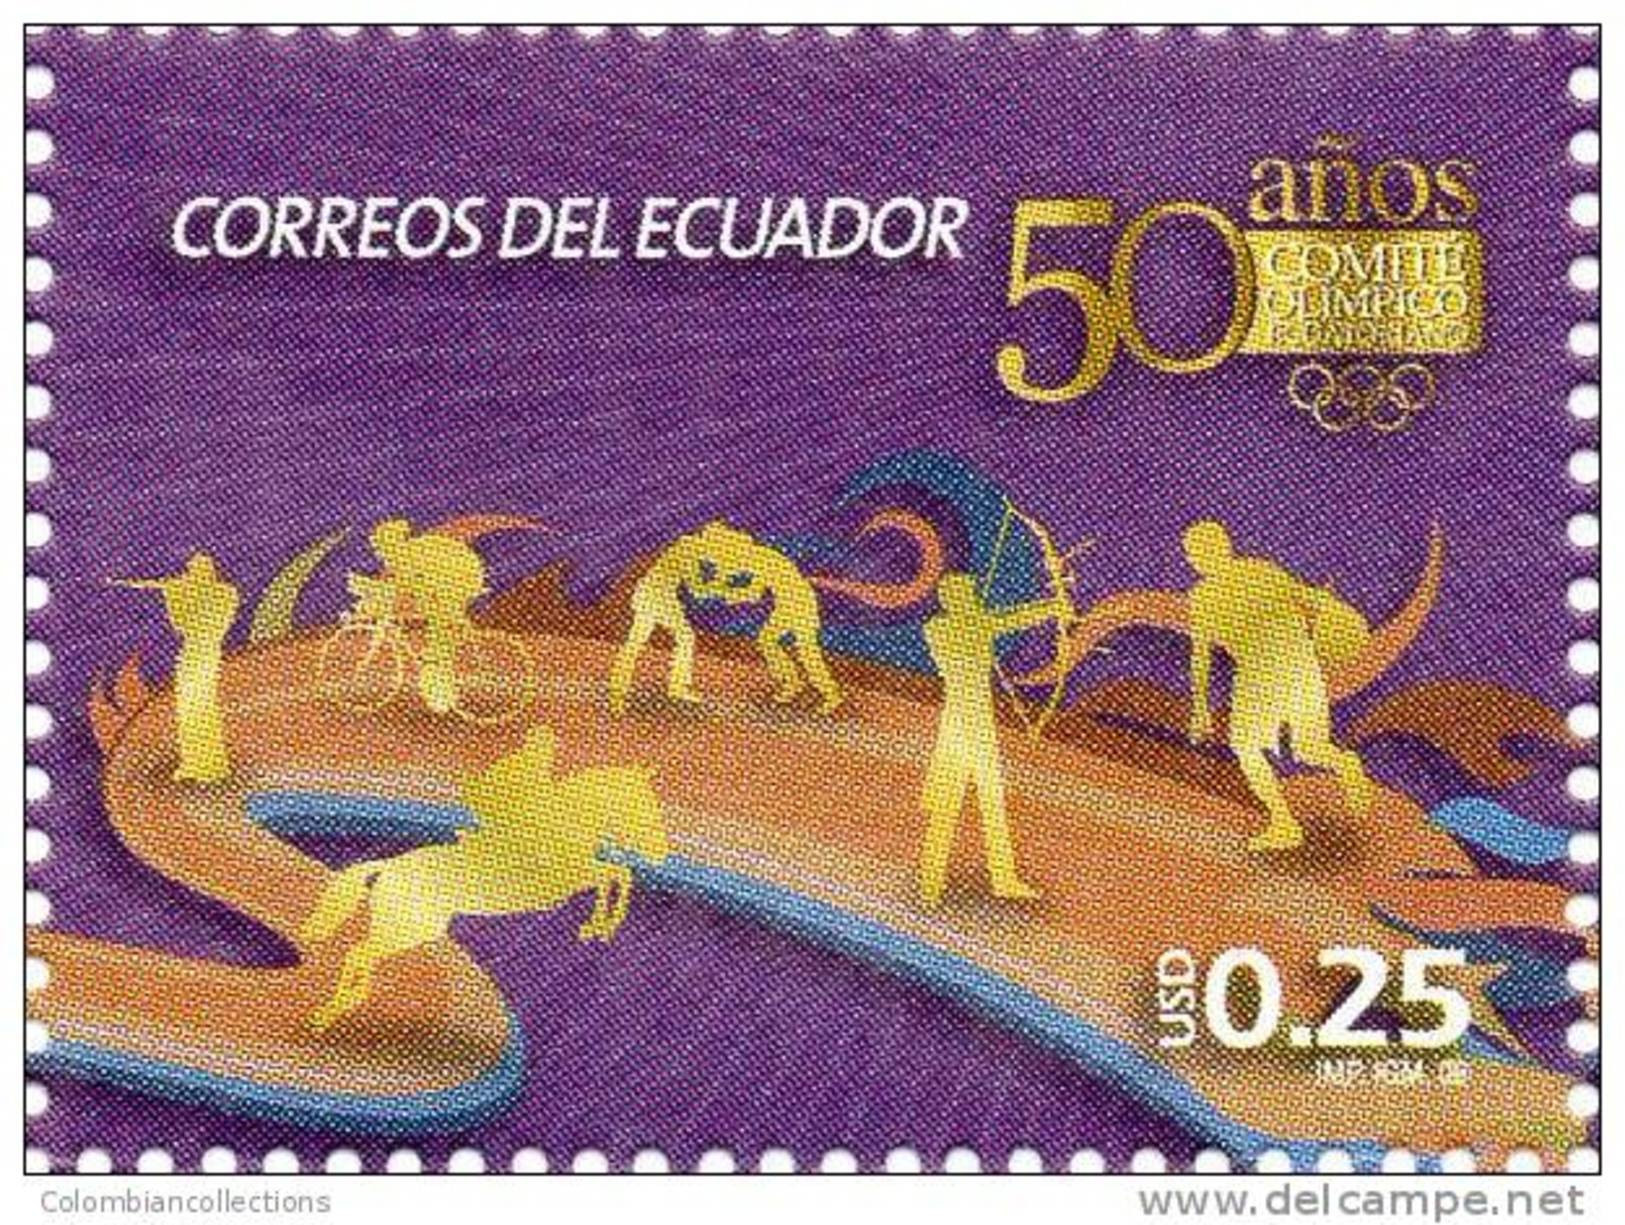 Lote EC8, Ecuador, 2009, Comite Olimpico Ecuatoriano,  Sello, Stamp, Sport - Ecuador